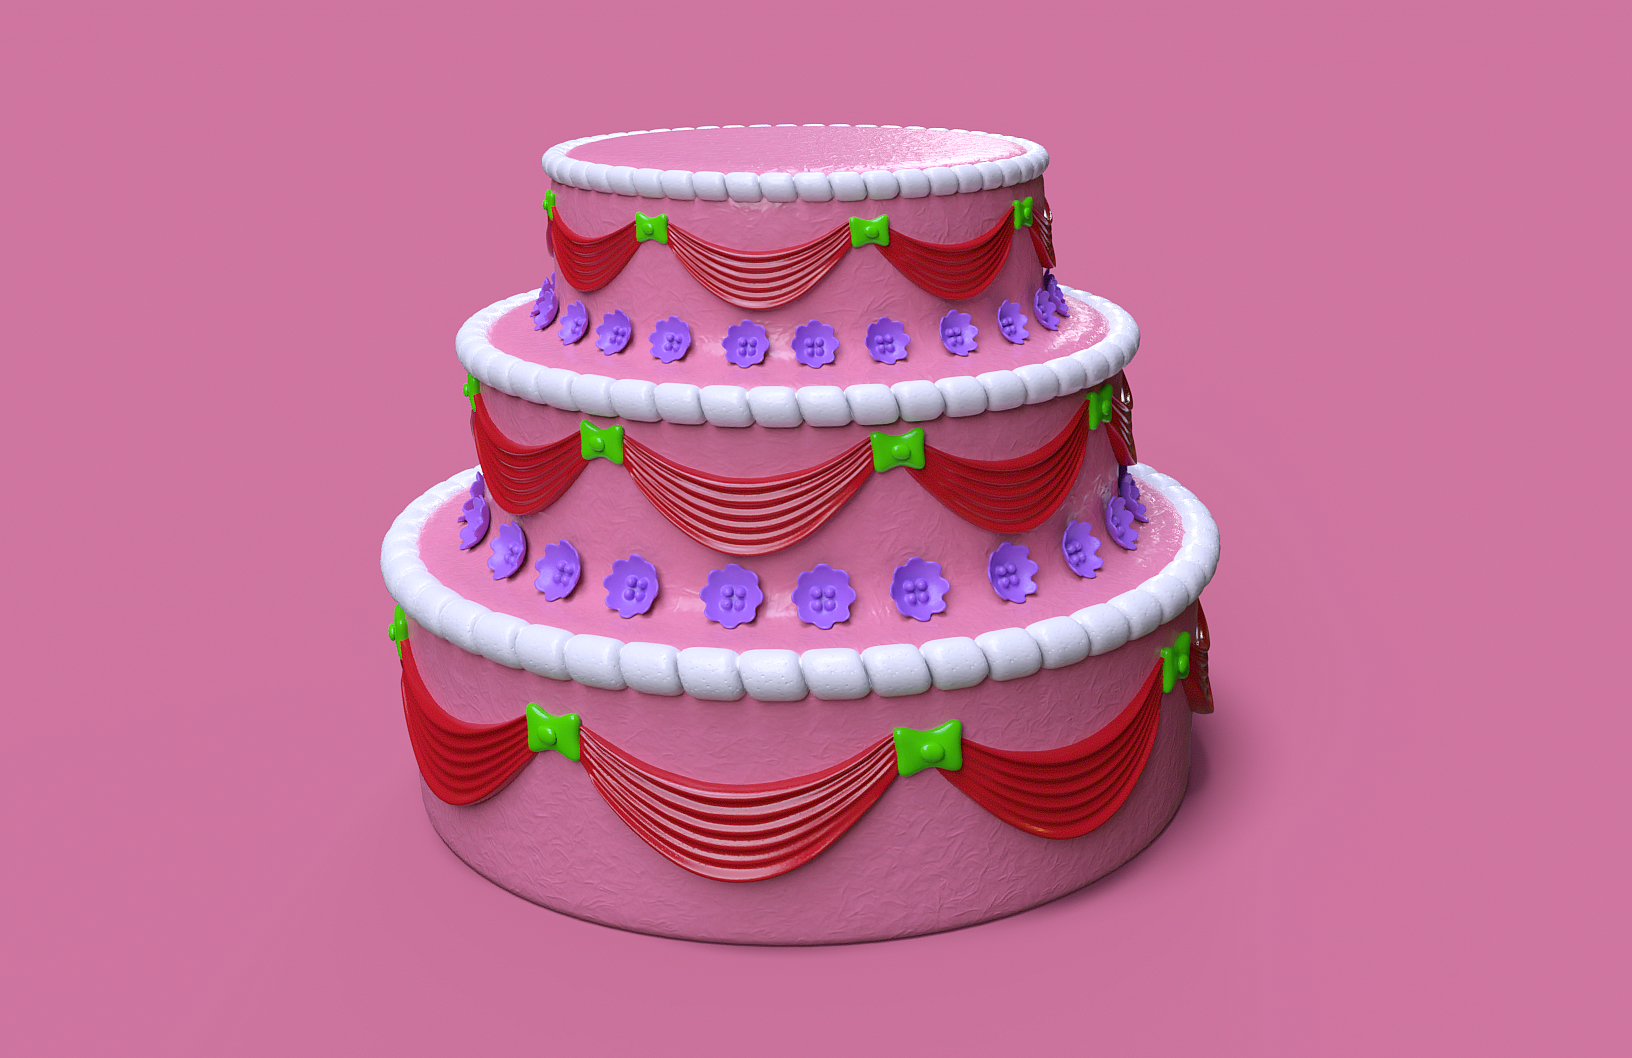 animated cake by cinema 4d & octane - YouTube